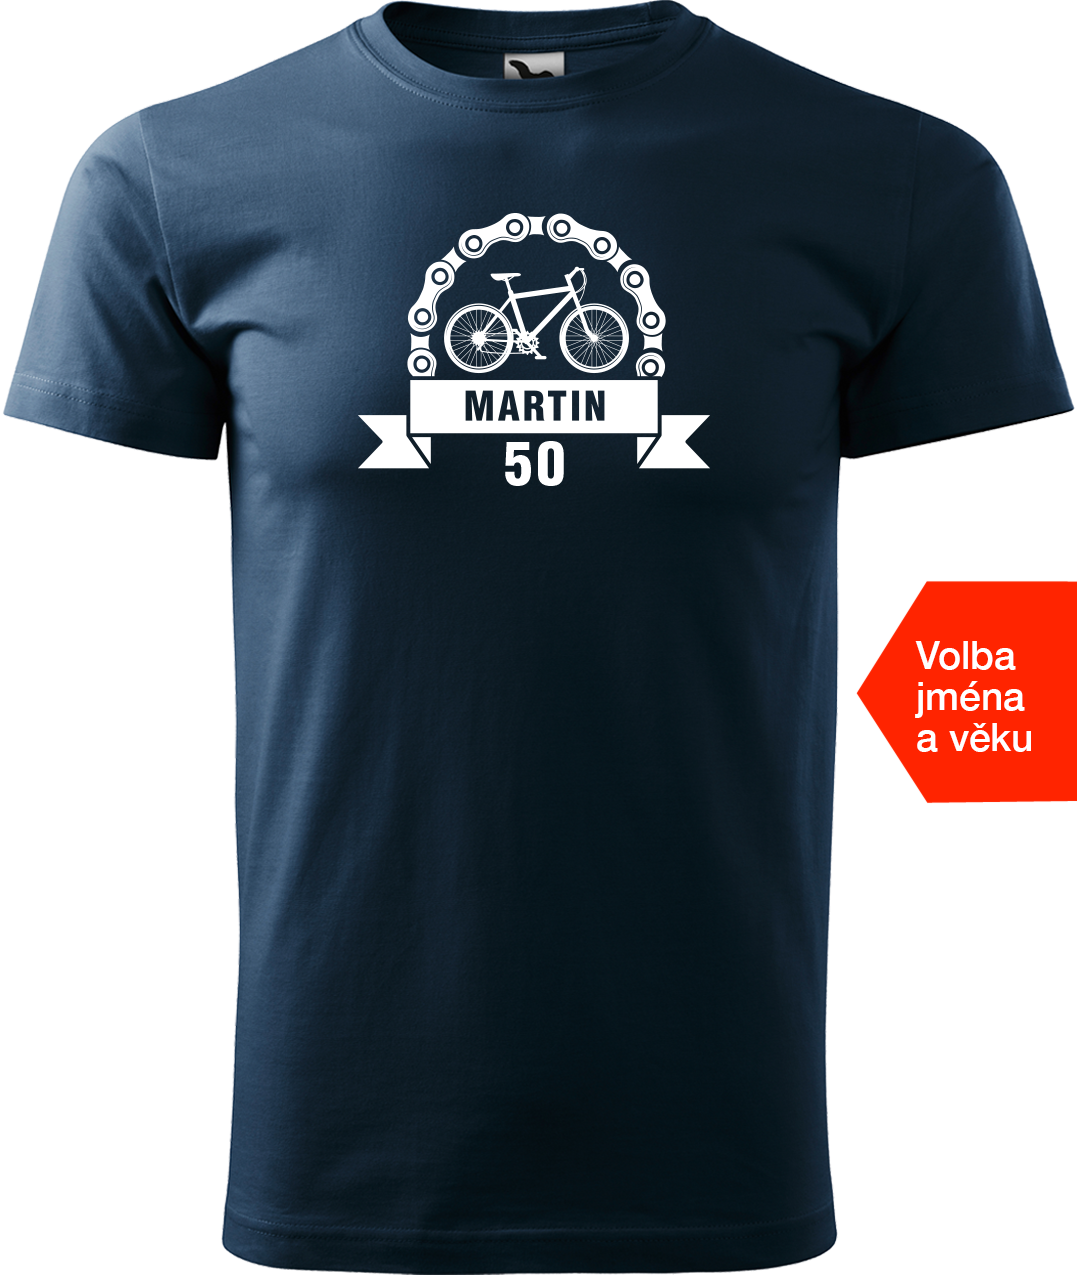 Pánské tričko pro cyklistu se jménem a věkem - Blahopřání Velikost: XL, Barva: Námořní modrá (02)